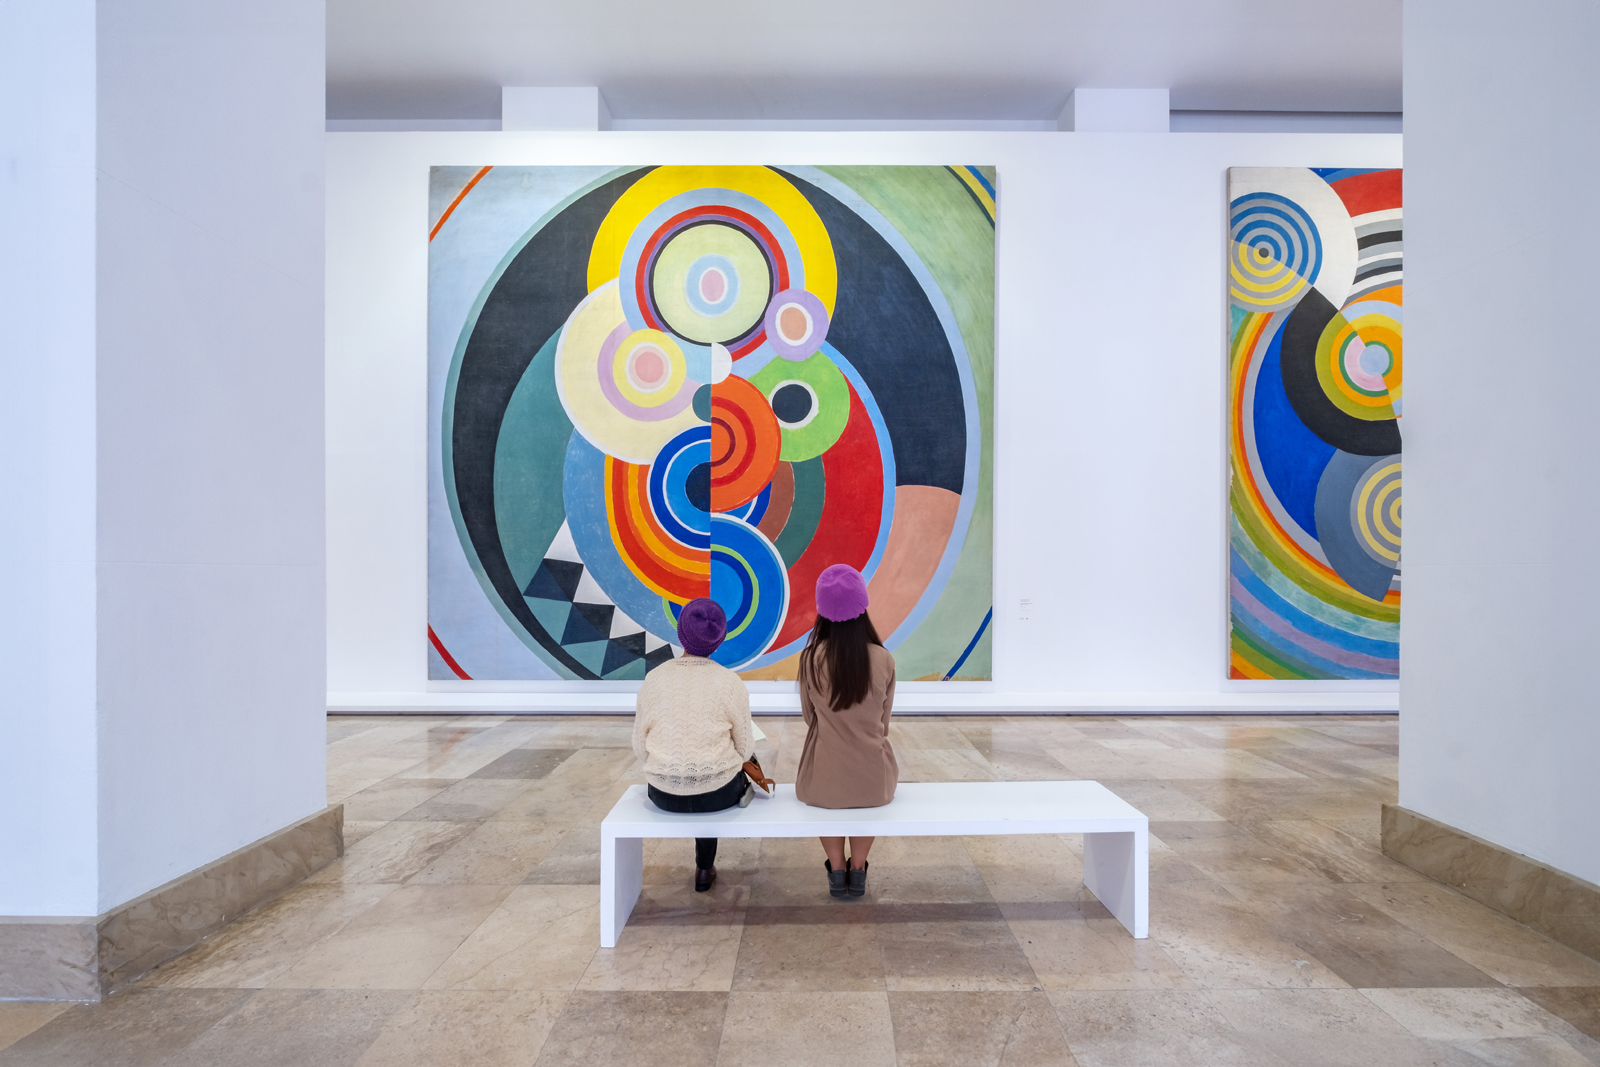 Le musée d'Art moderne de Paris propose dans sa collection permanente des chefs-d'œuvre du XXe siècle, comme ici une œuvre de la série « Rythme n°1 », de Robert Delaunay.